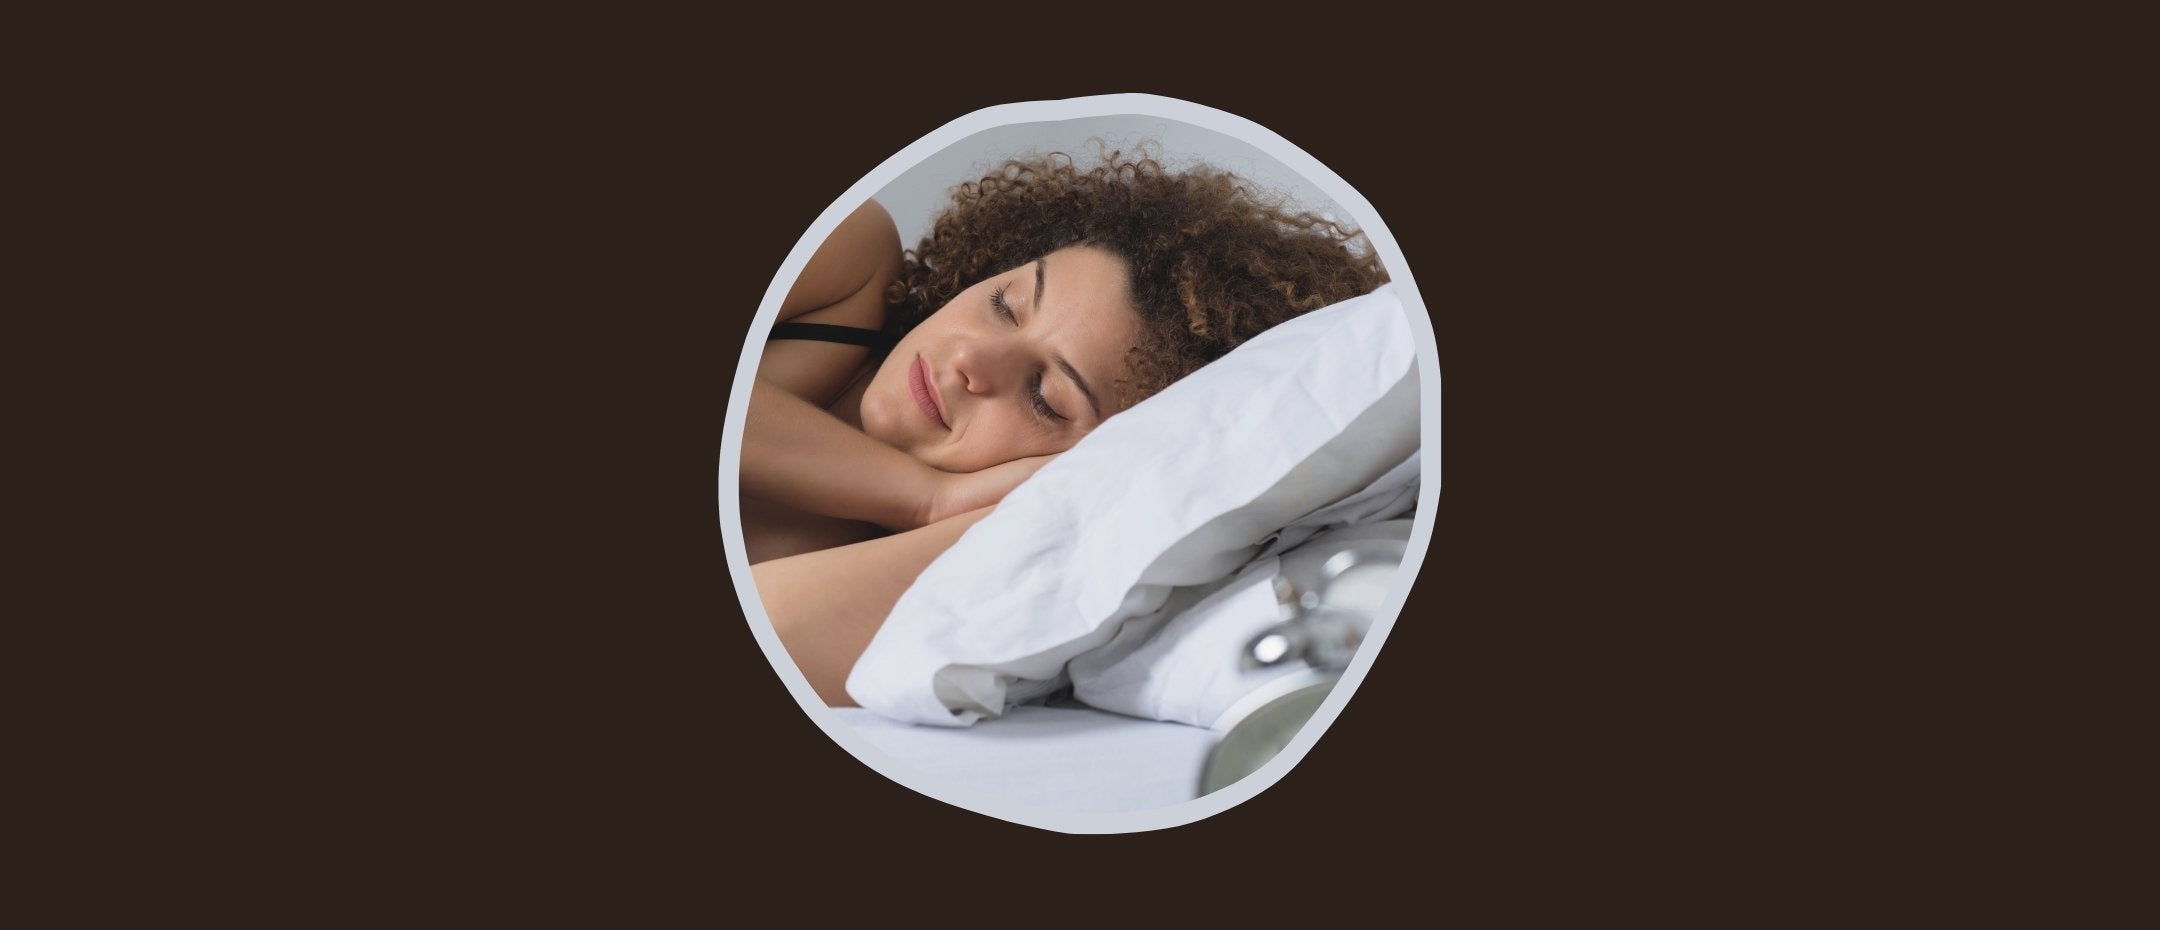 Femme avec les cheveux bouclés dormant dans son lit